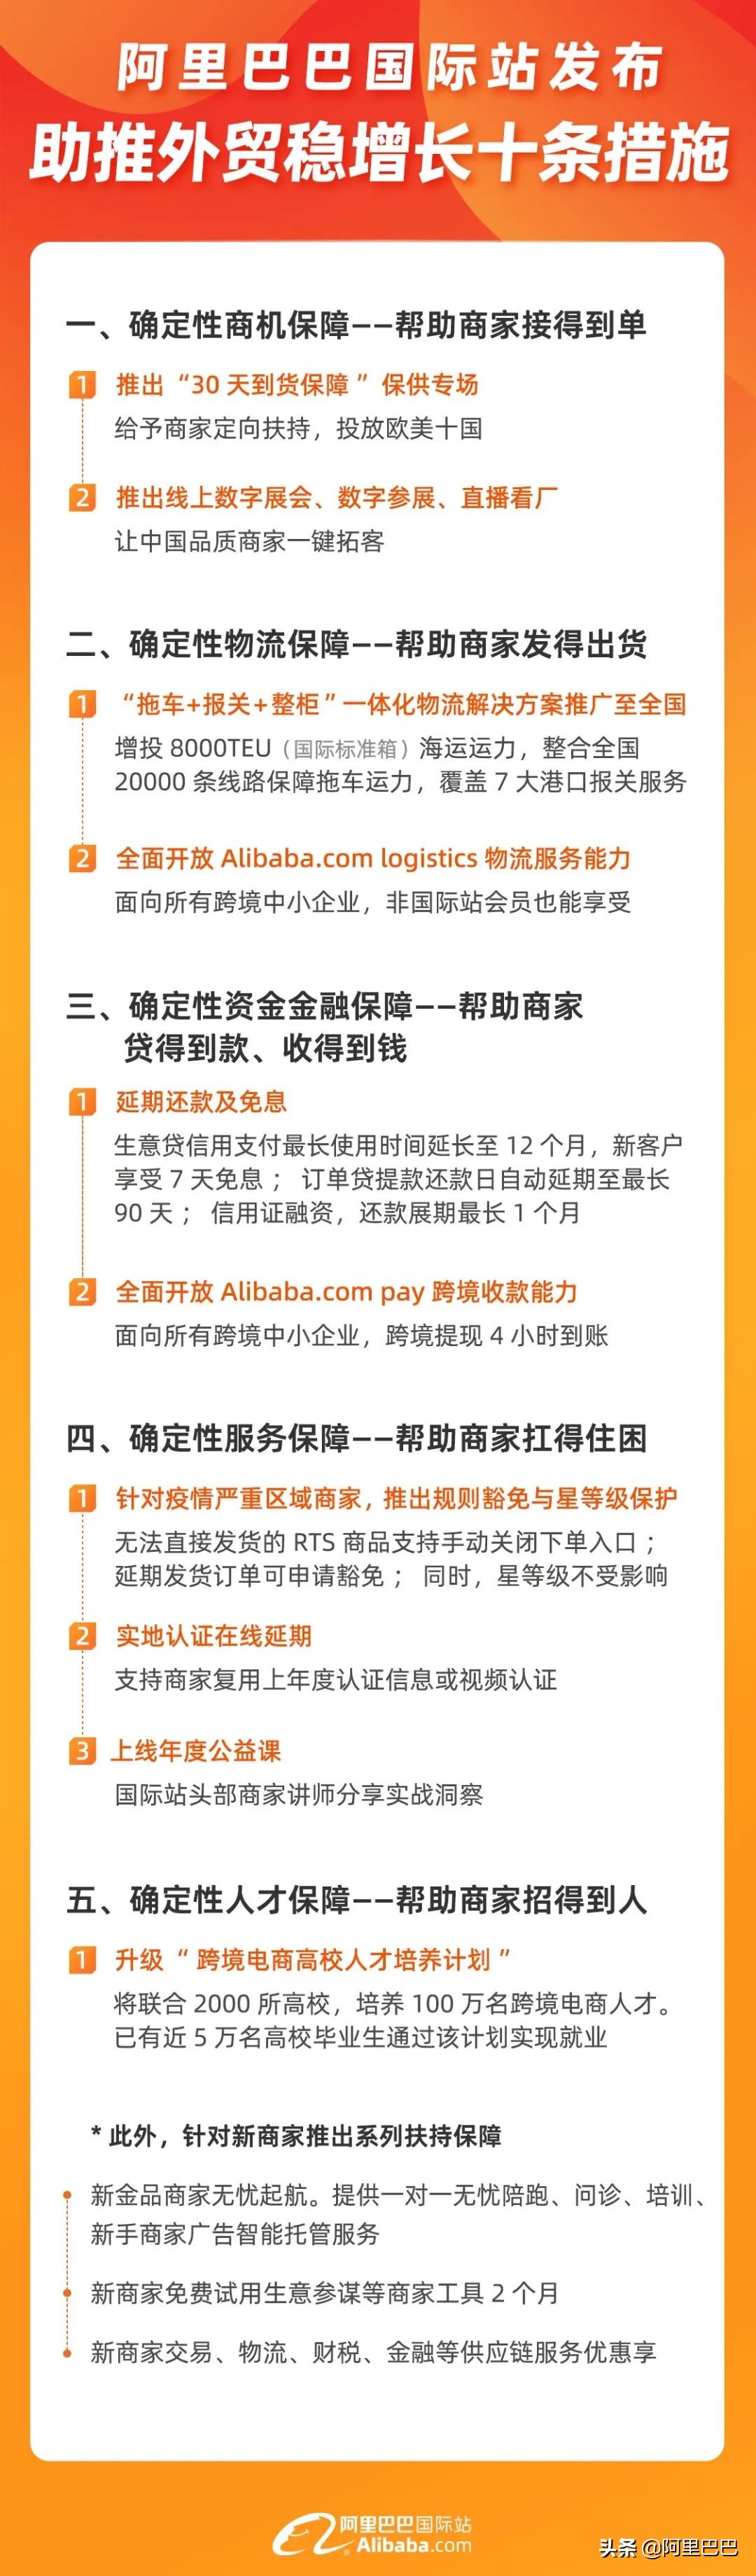 上海新帑实业招聘信息（阿里巴巴国际站这10条举措希望能帮到外贸人）